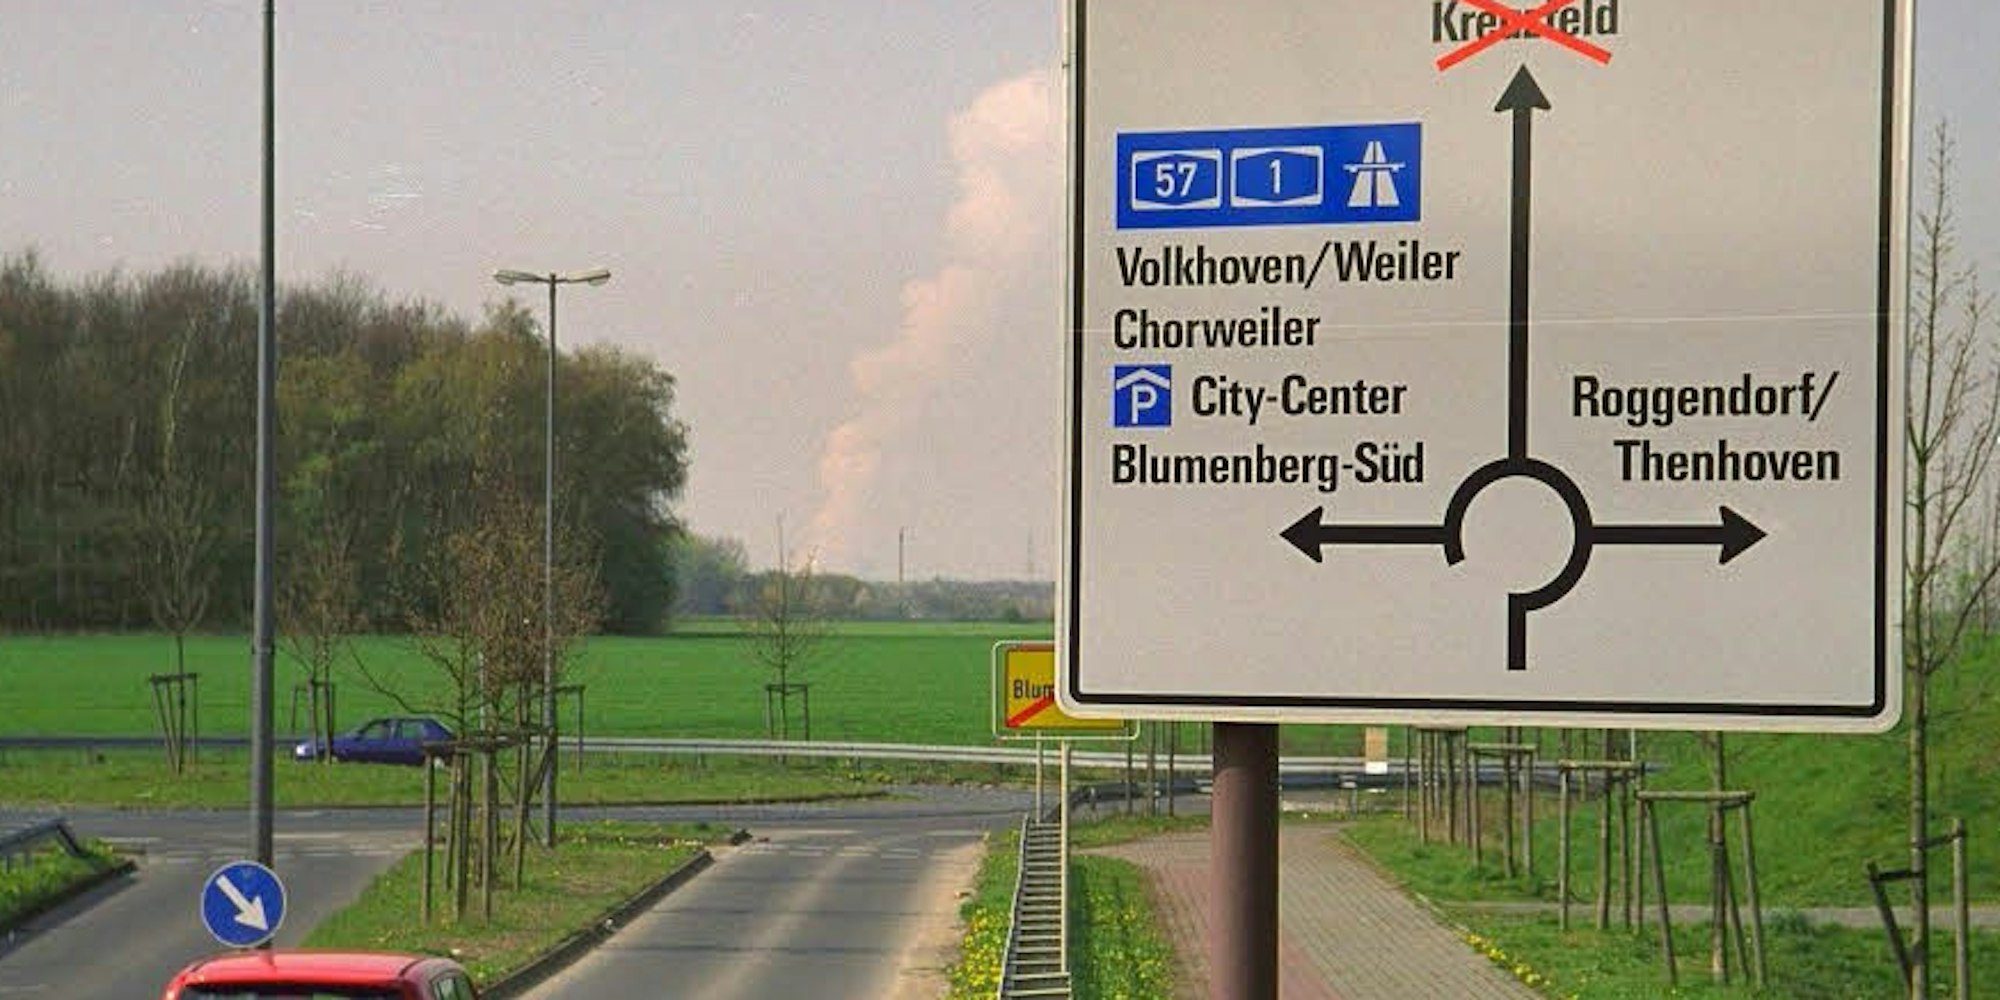 Bis vor einigen Jahren war der Name Kreuzfeld bereits auf Straßenschildern zu lesen.